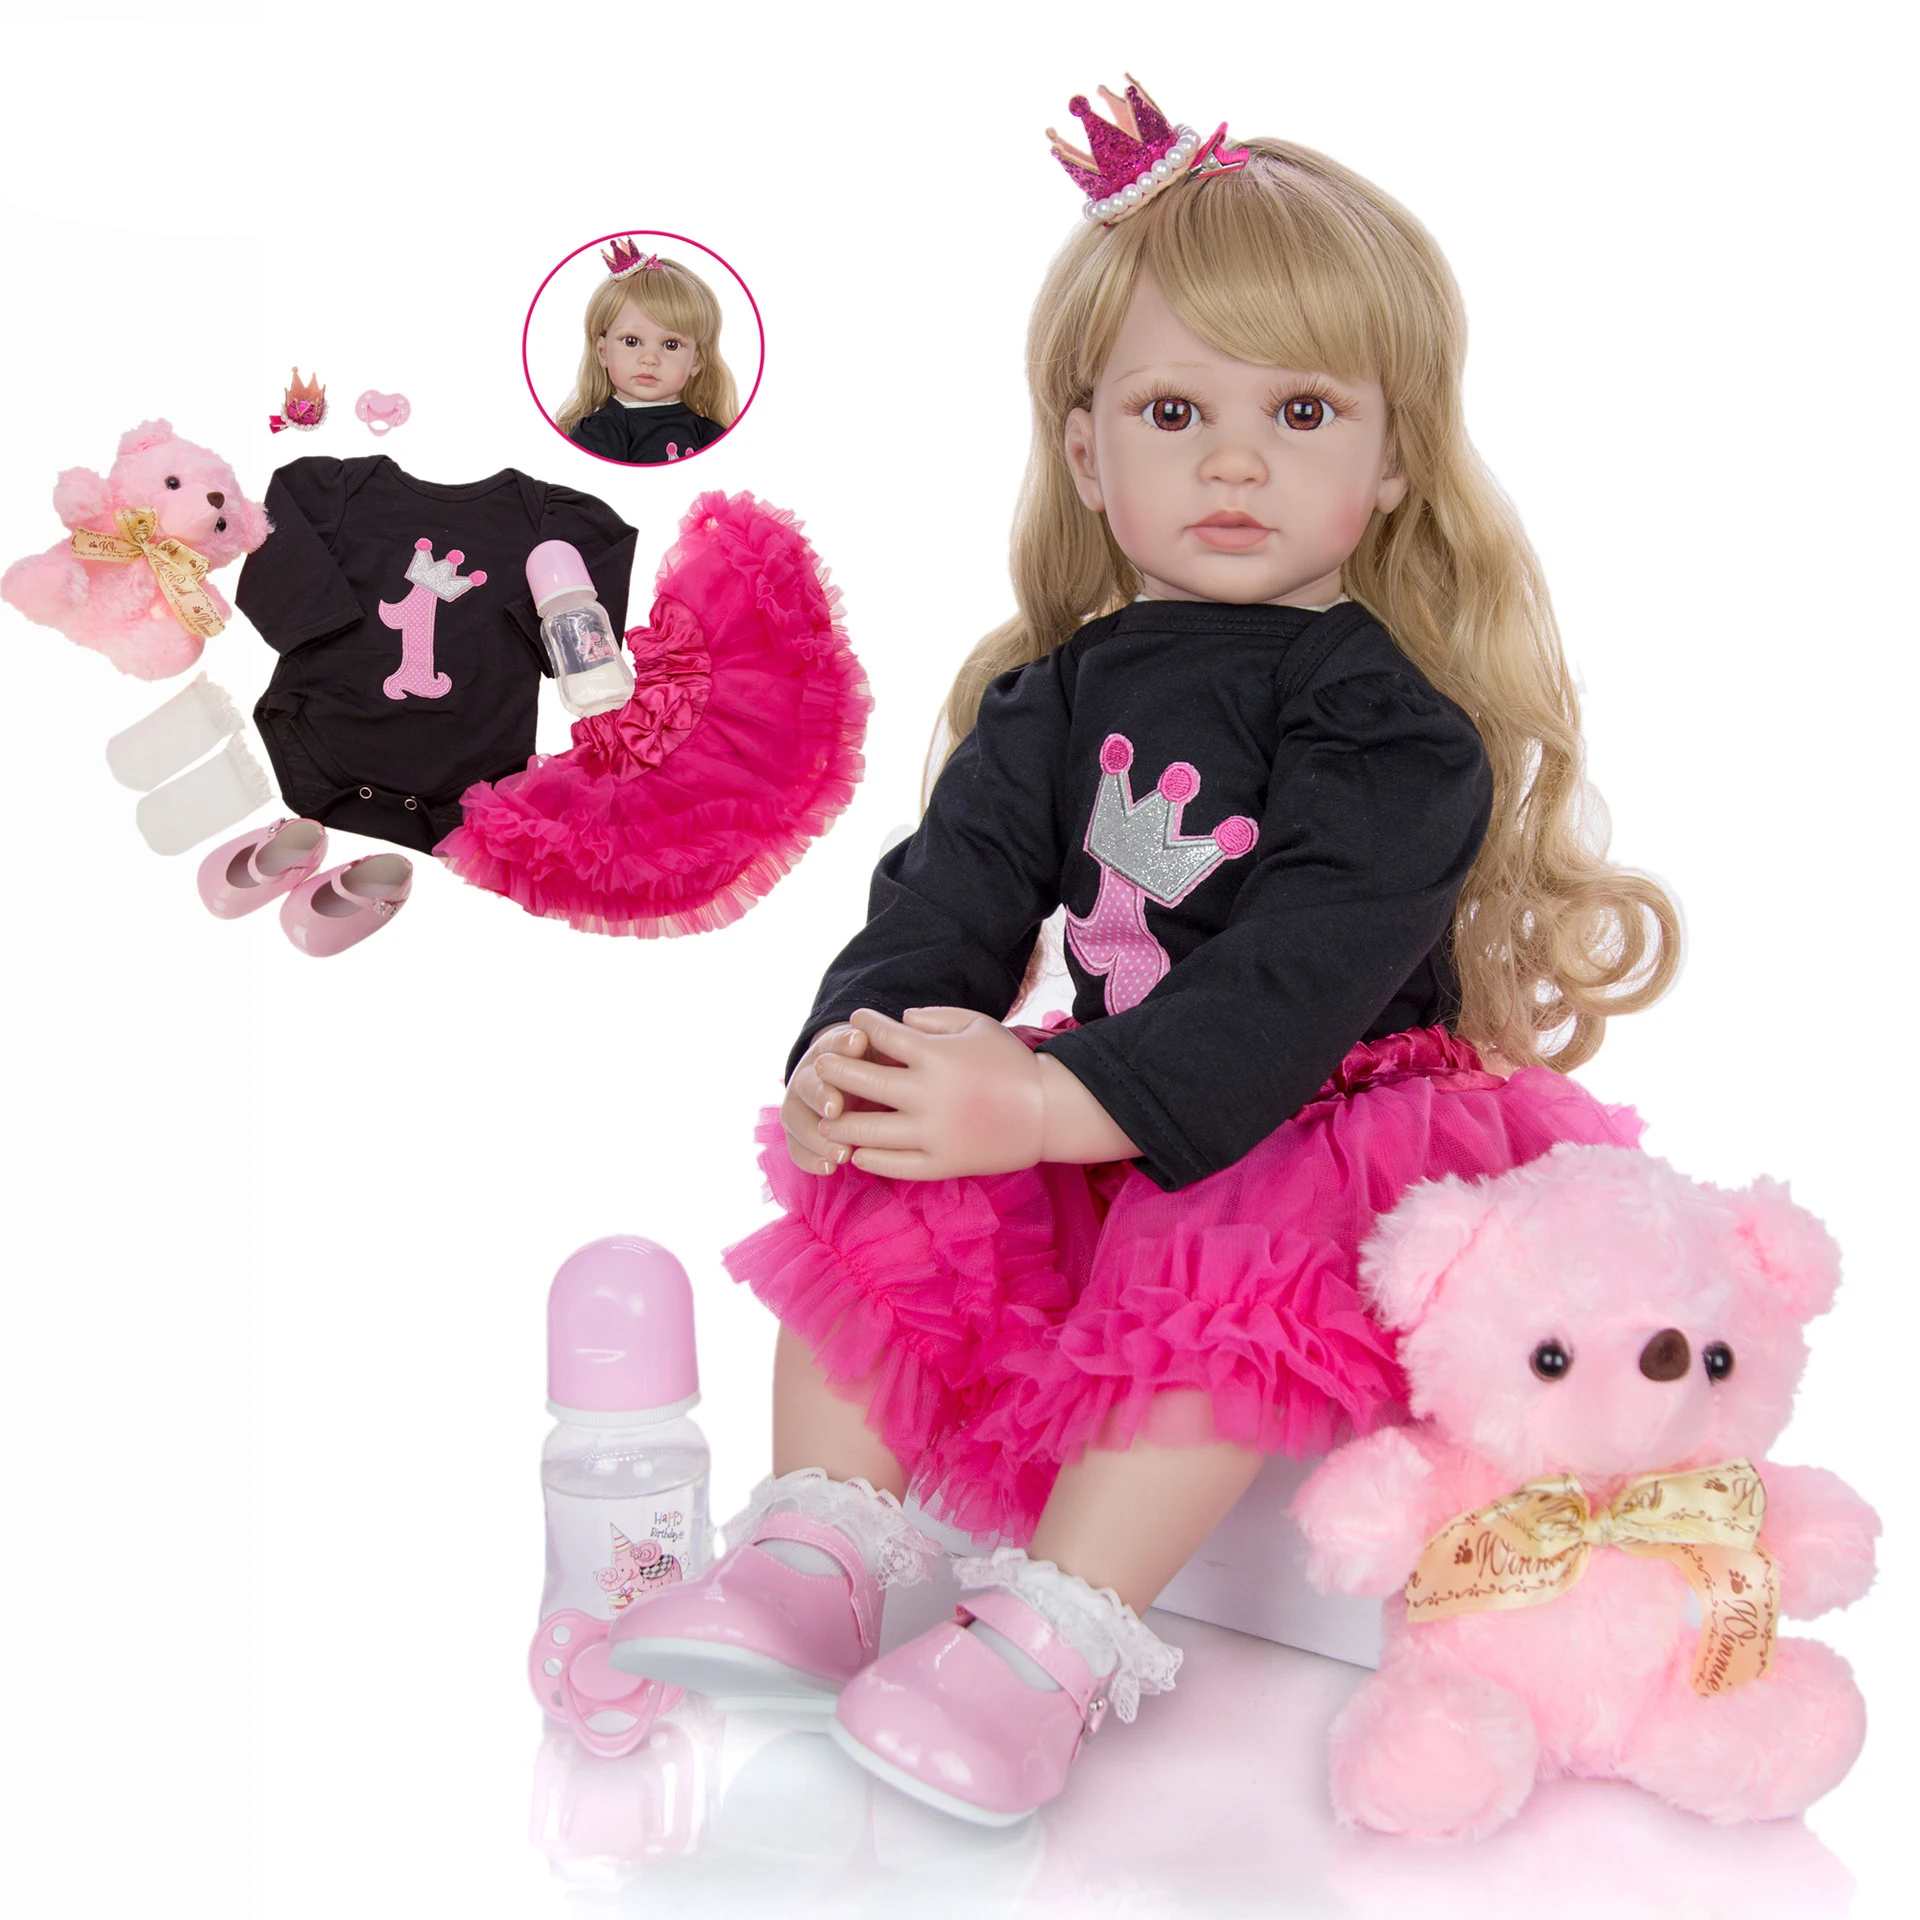 

Кукла реборн 24 дюйма, тканевая кукла 60 см с одеждой для новорожденных девочек, игрушка для малышей, принцесса, кукла-младенец, распродажа, по...